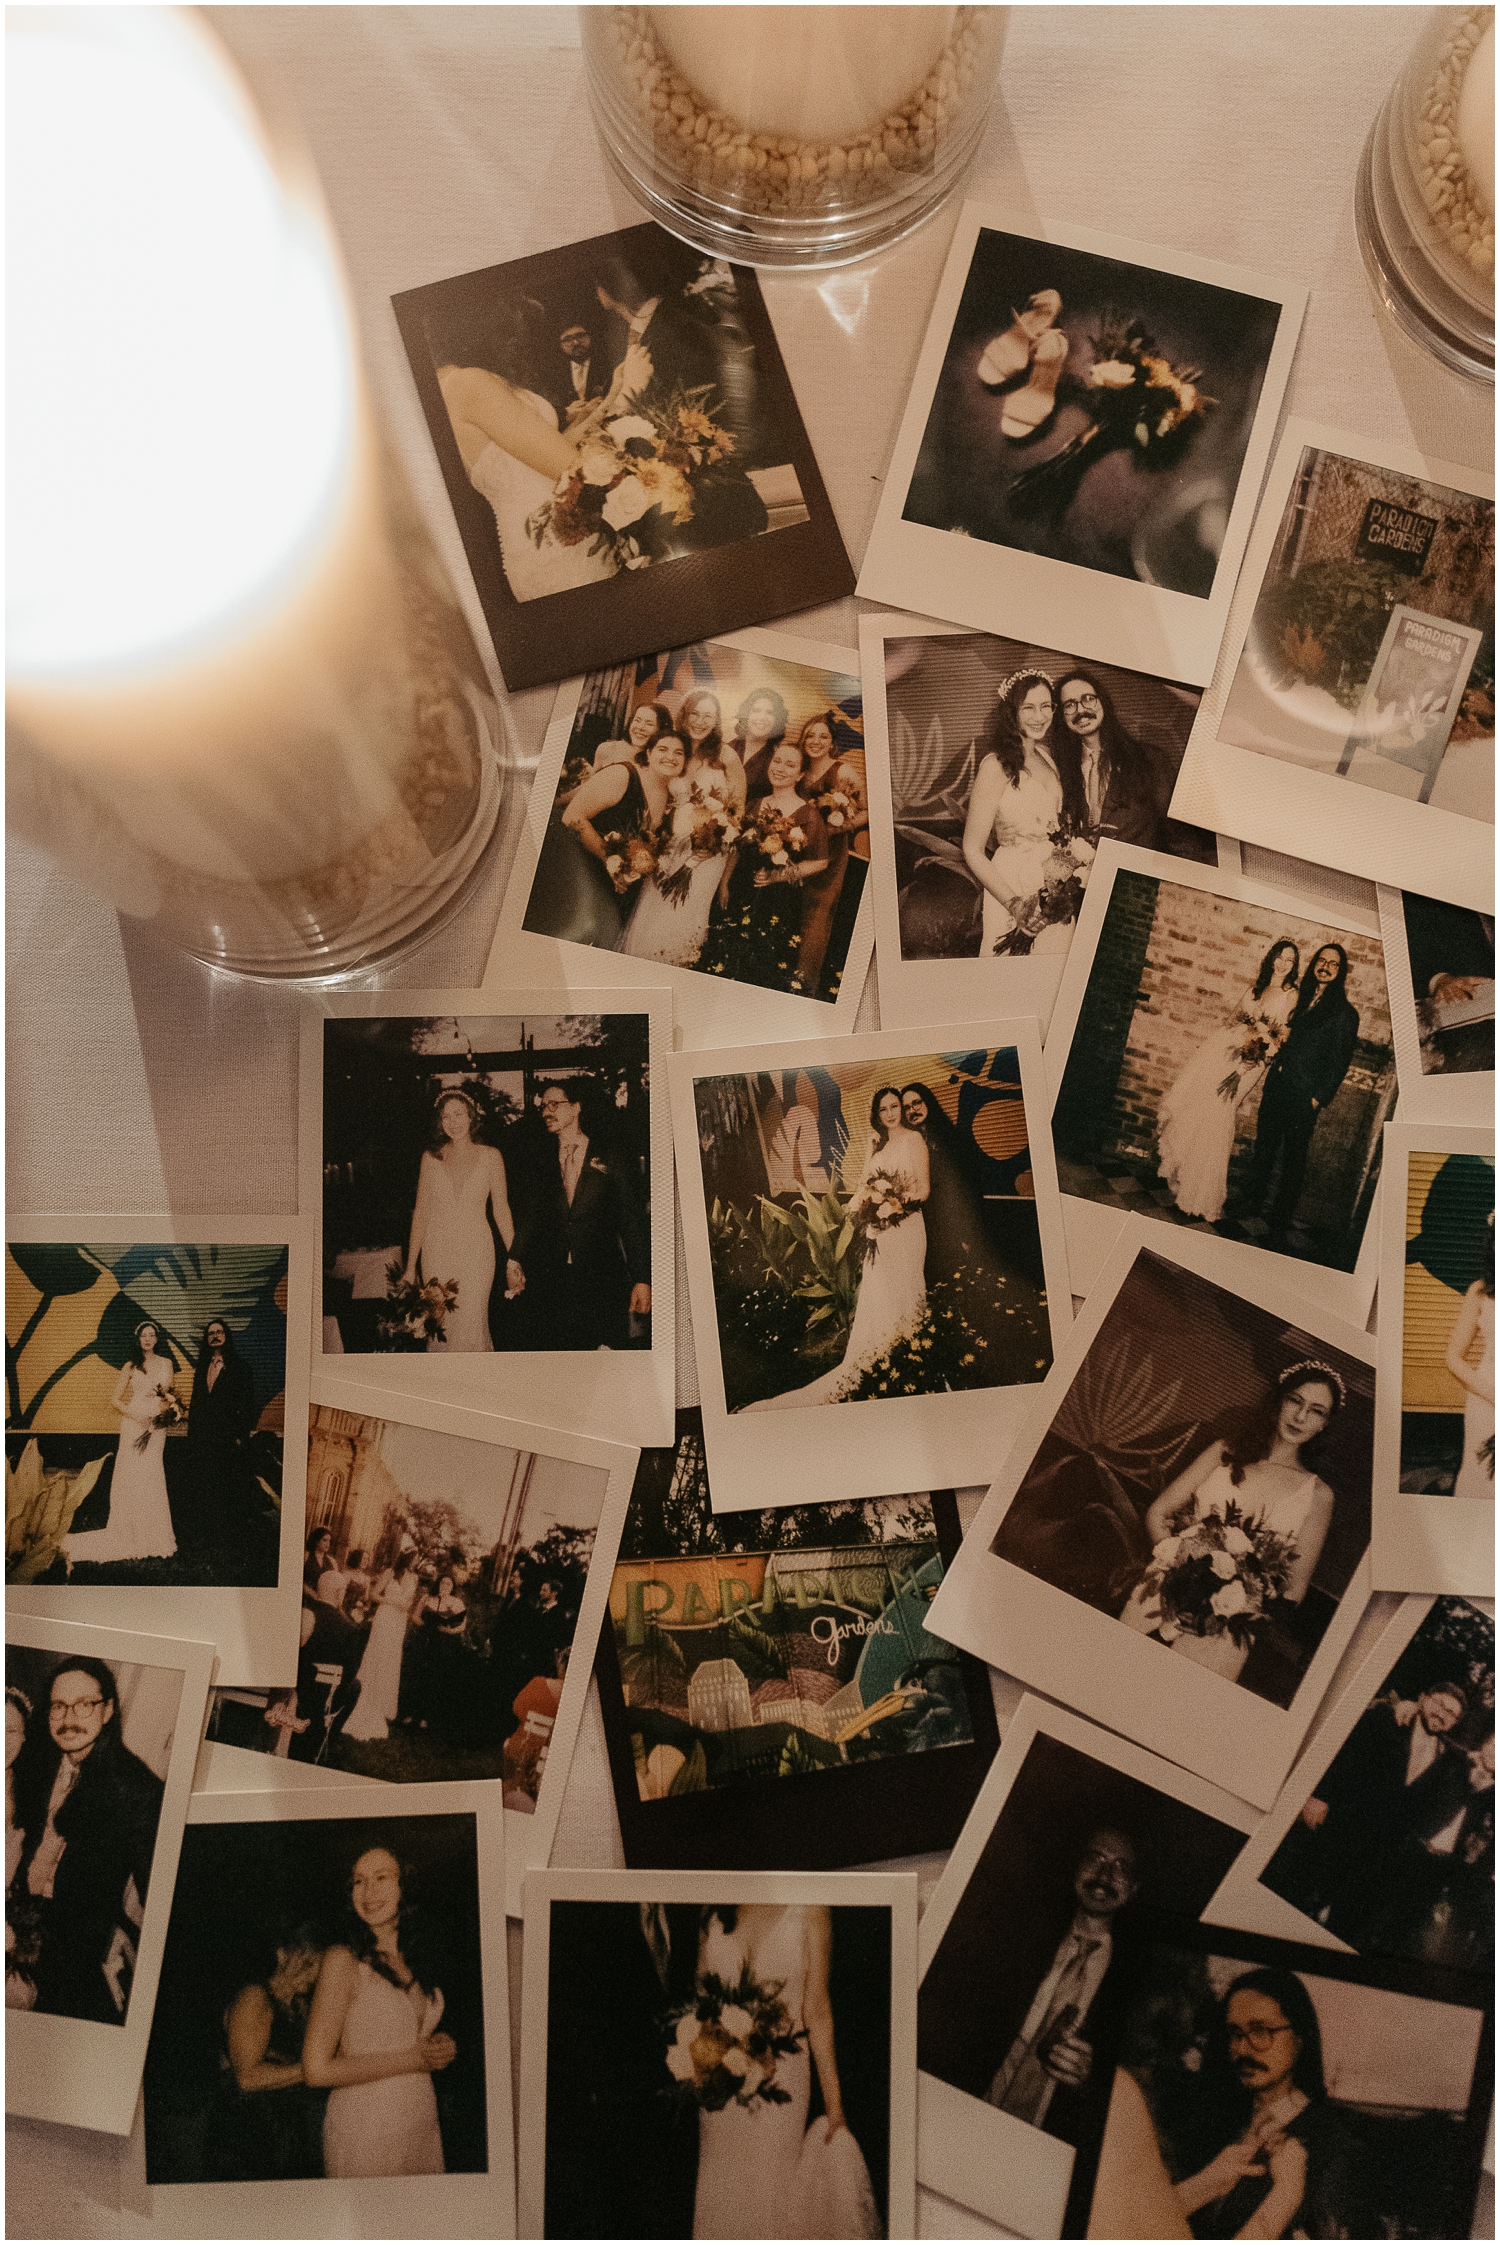 Polaroid wedding photos are arranged around candles on a white table.